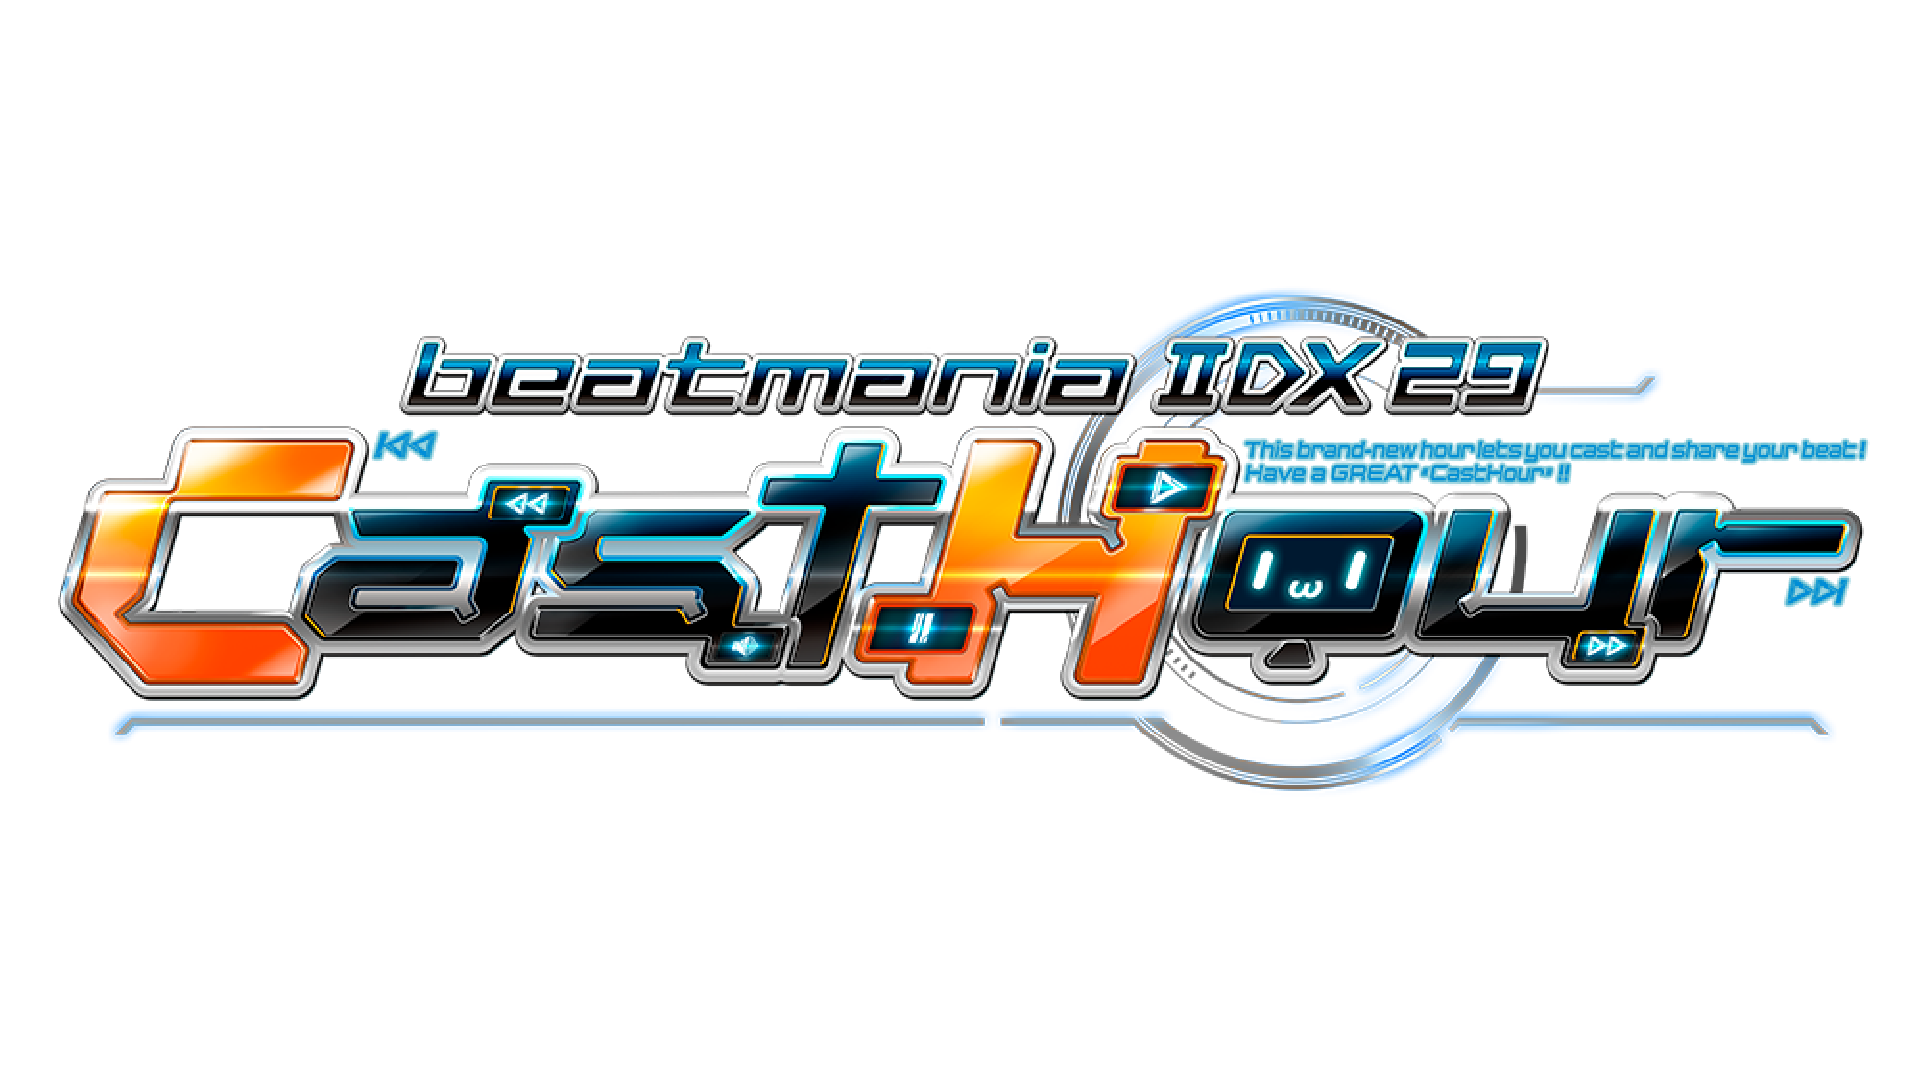 beatmania IIDX 29 CastHour Logo